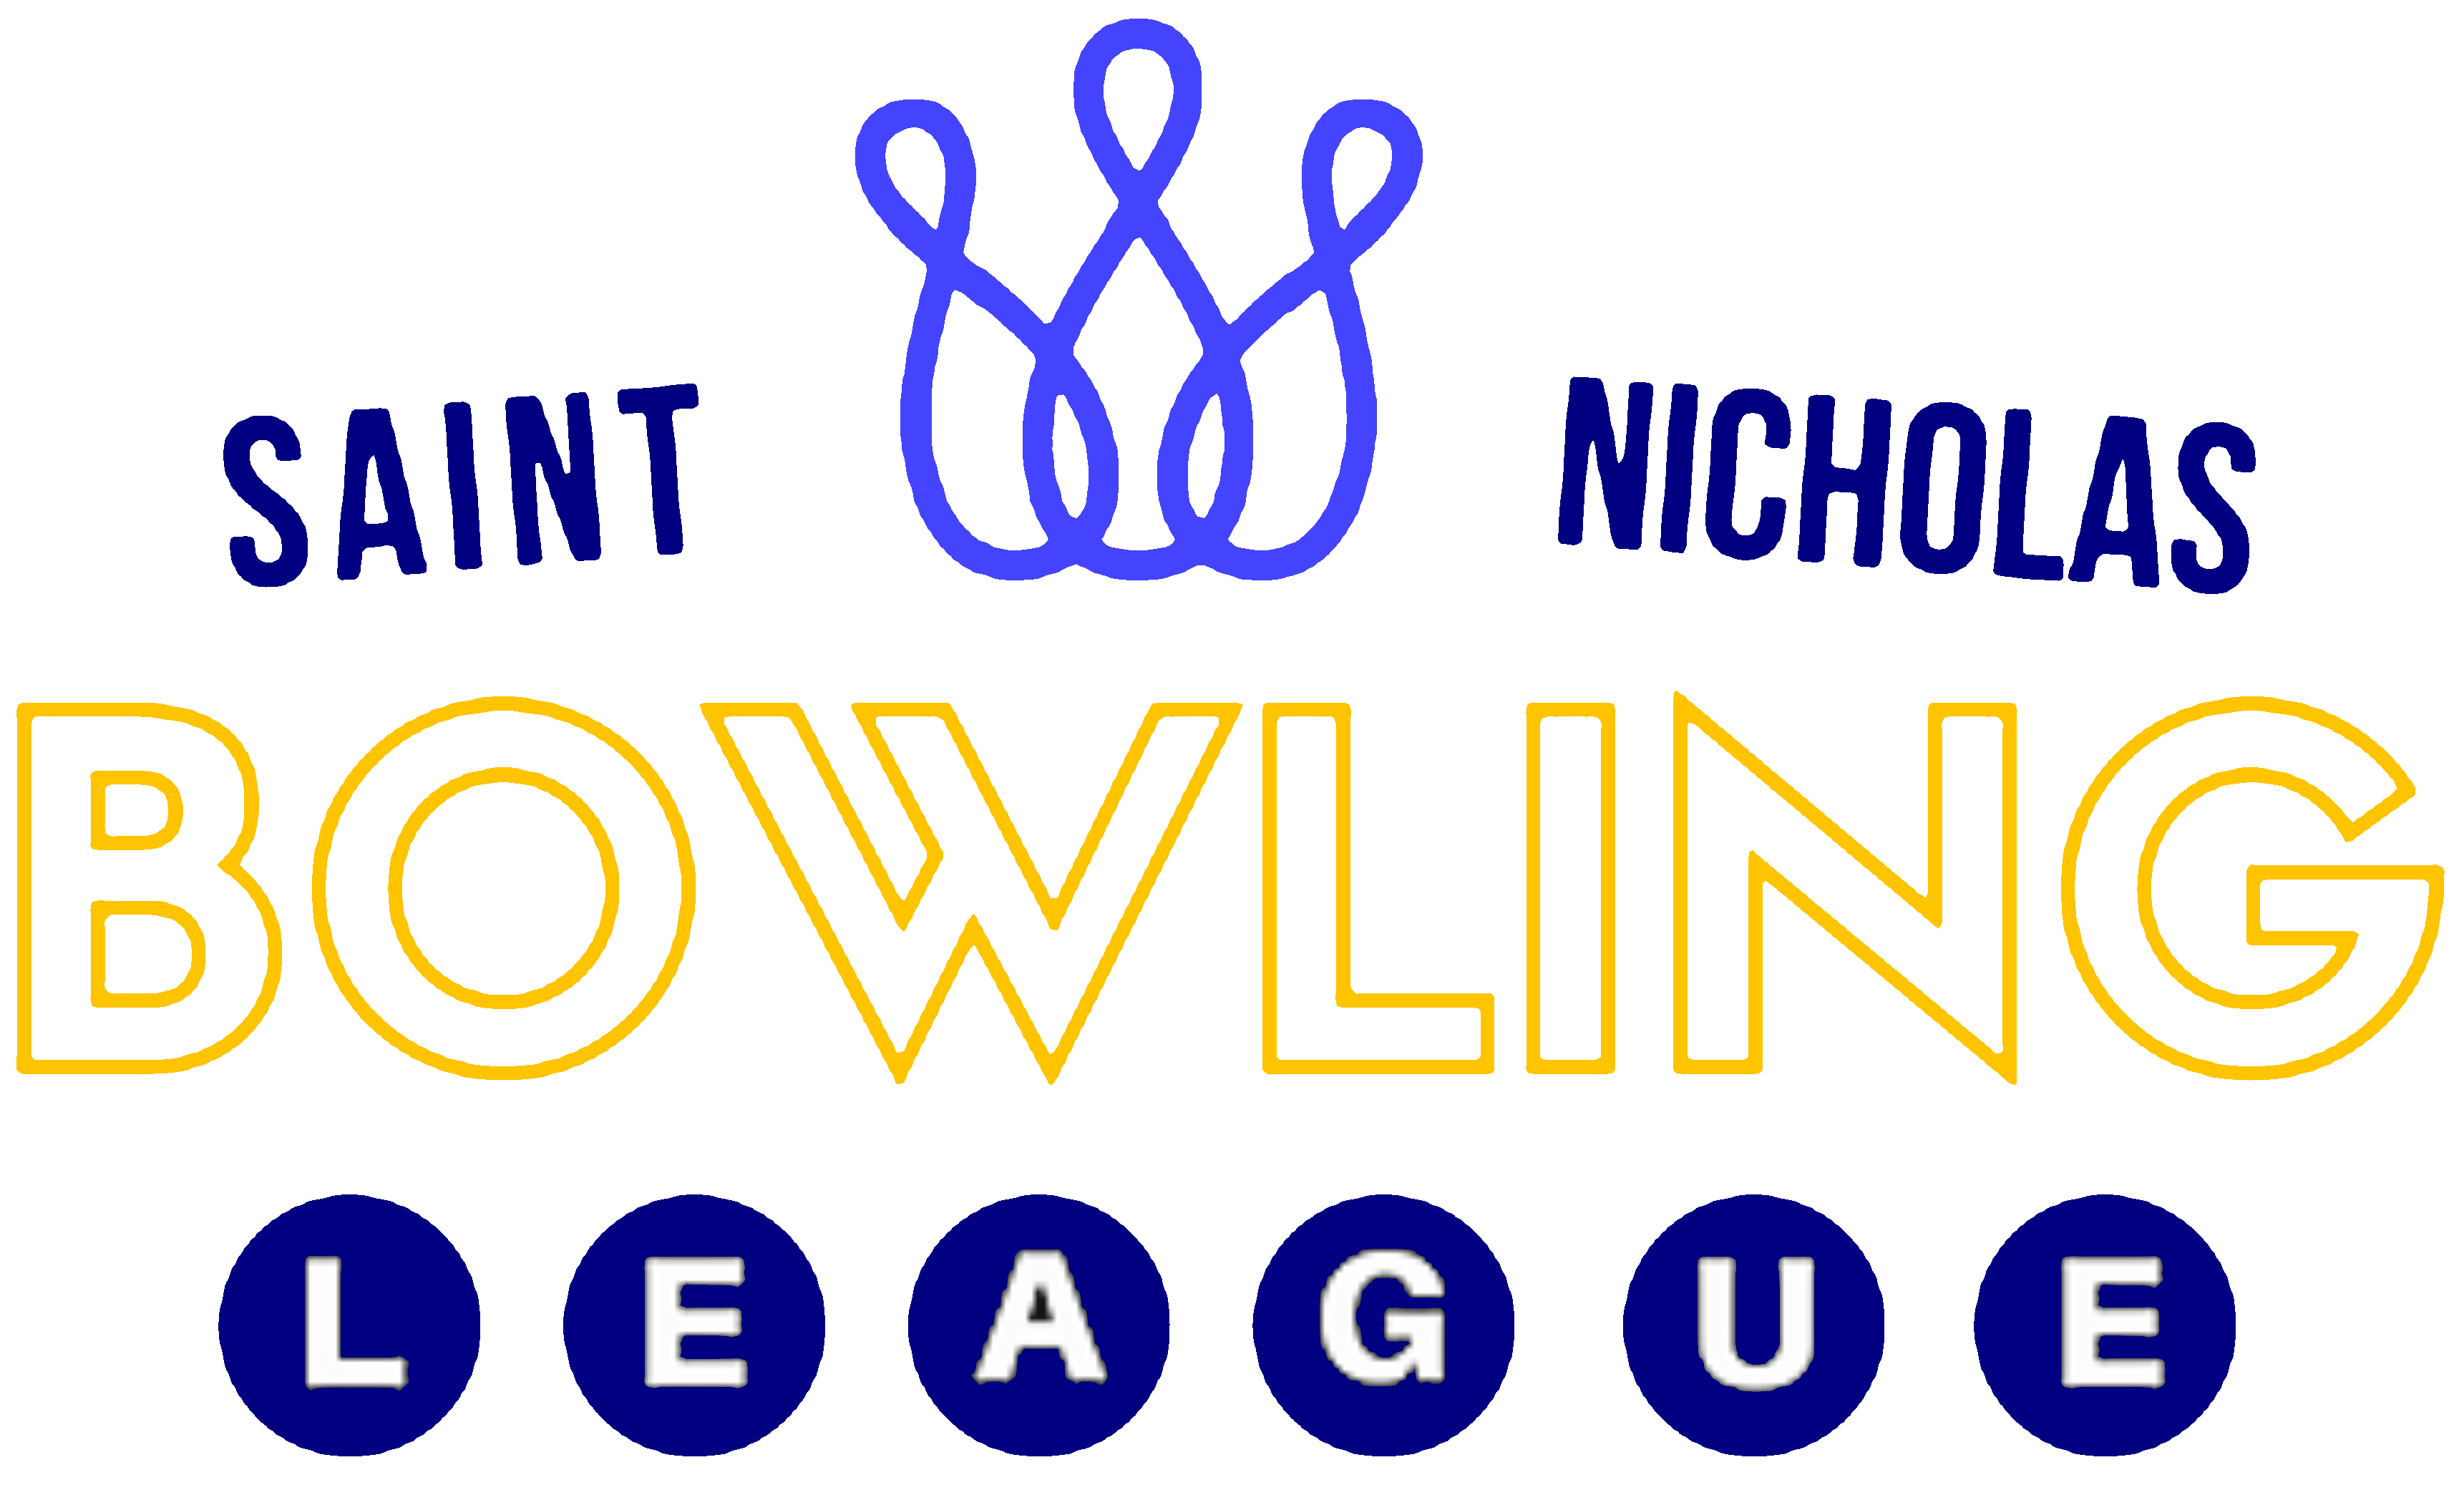 St. Nicholas Bowling League